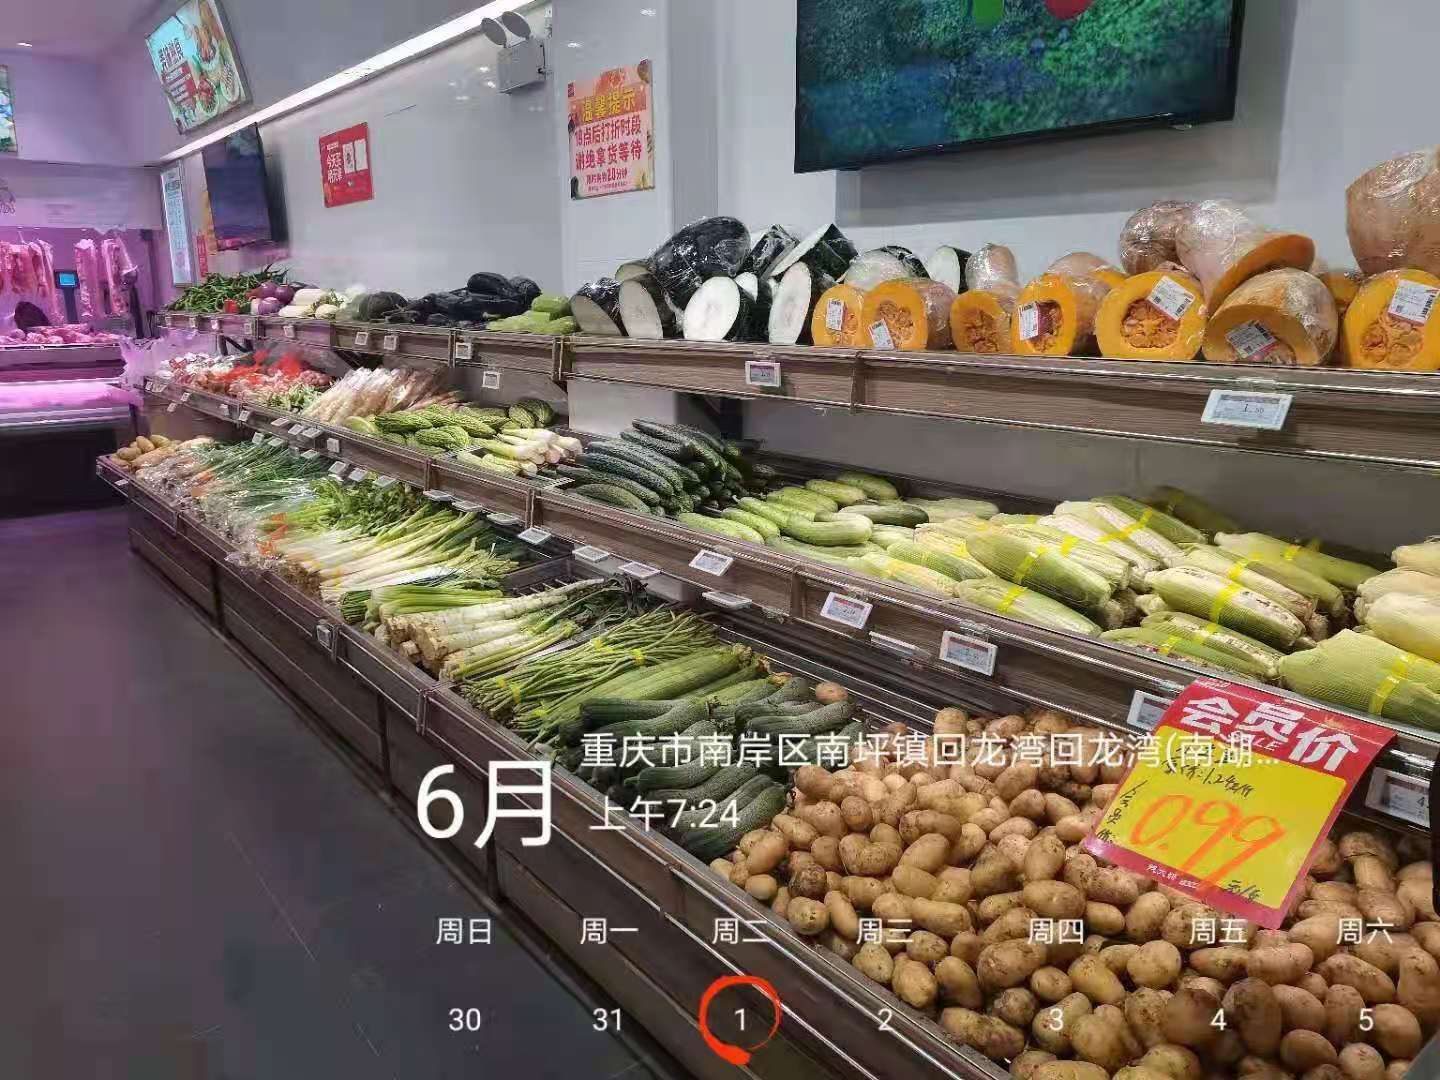 江北区鹏睿生鲜超市 环境照片活动图片